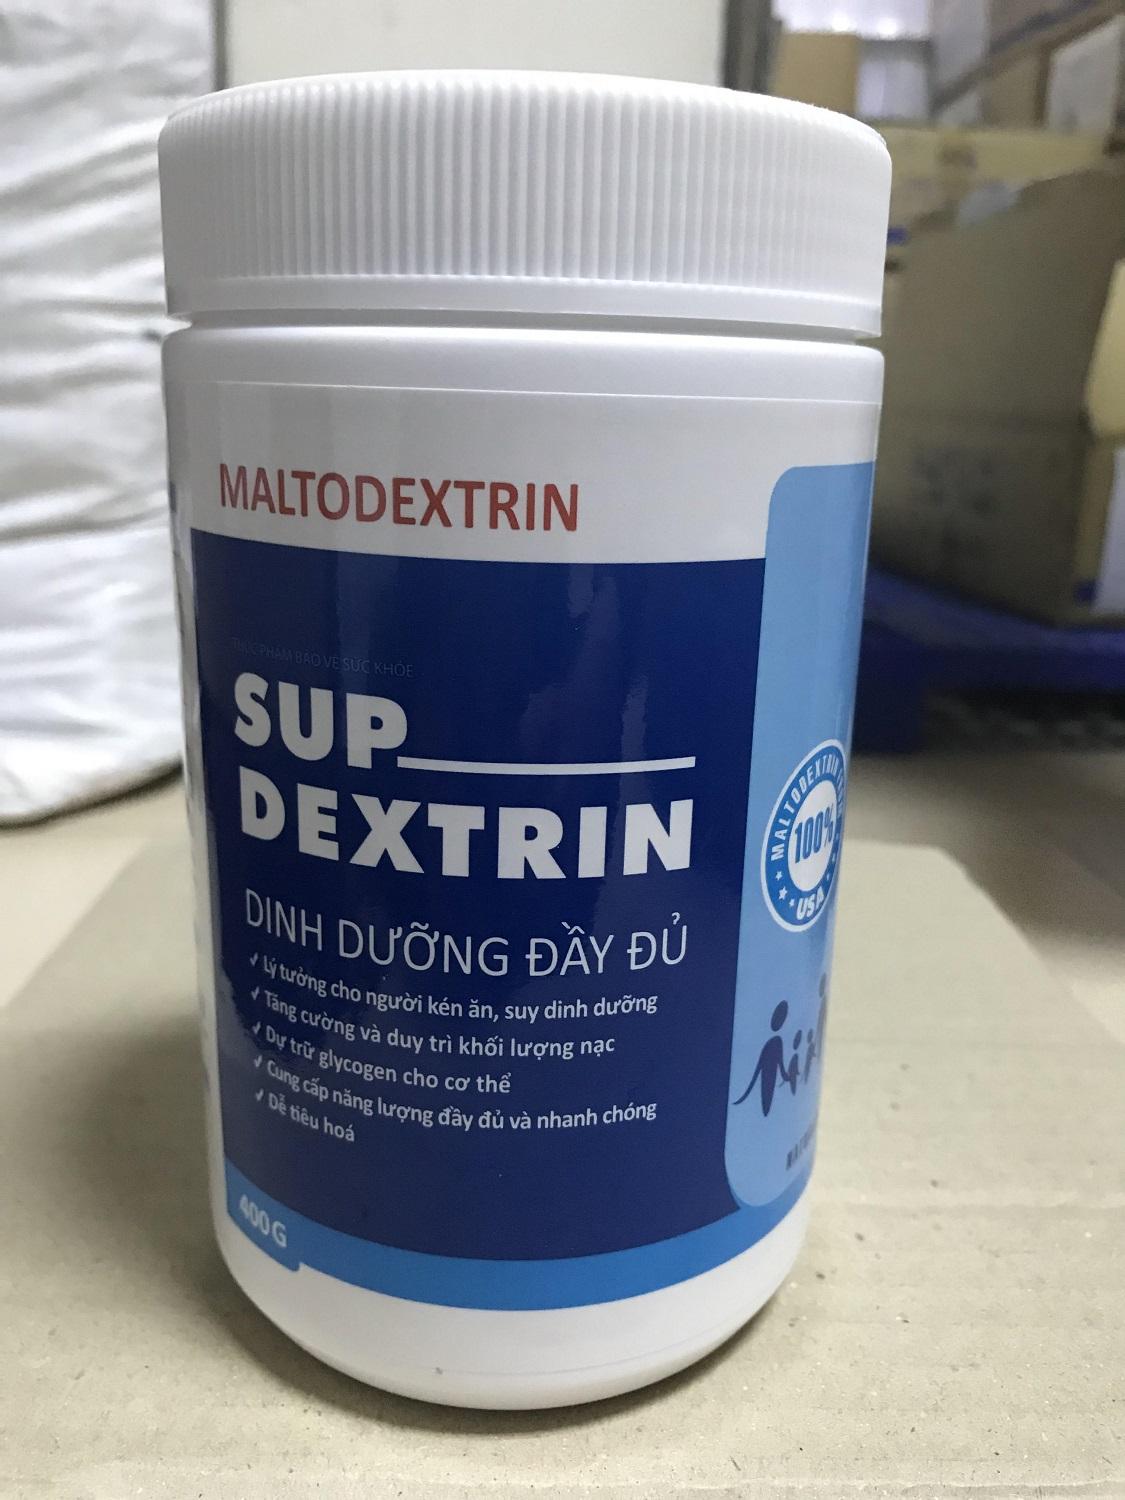 SUP-DEXTRIN-Thực phẩm hỗ trợ dinh dưỡng